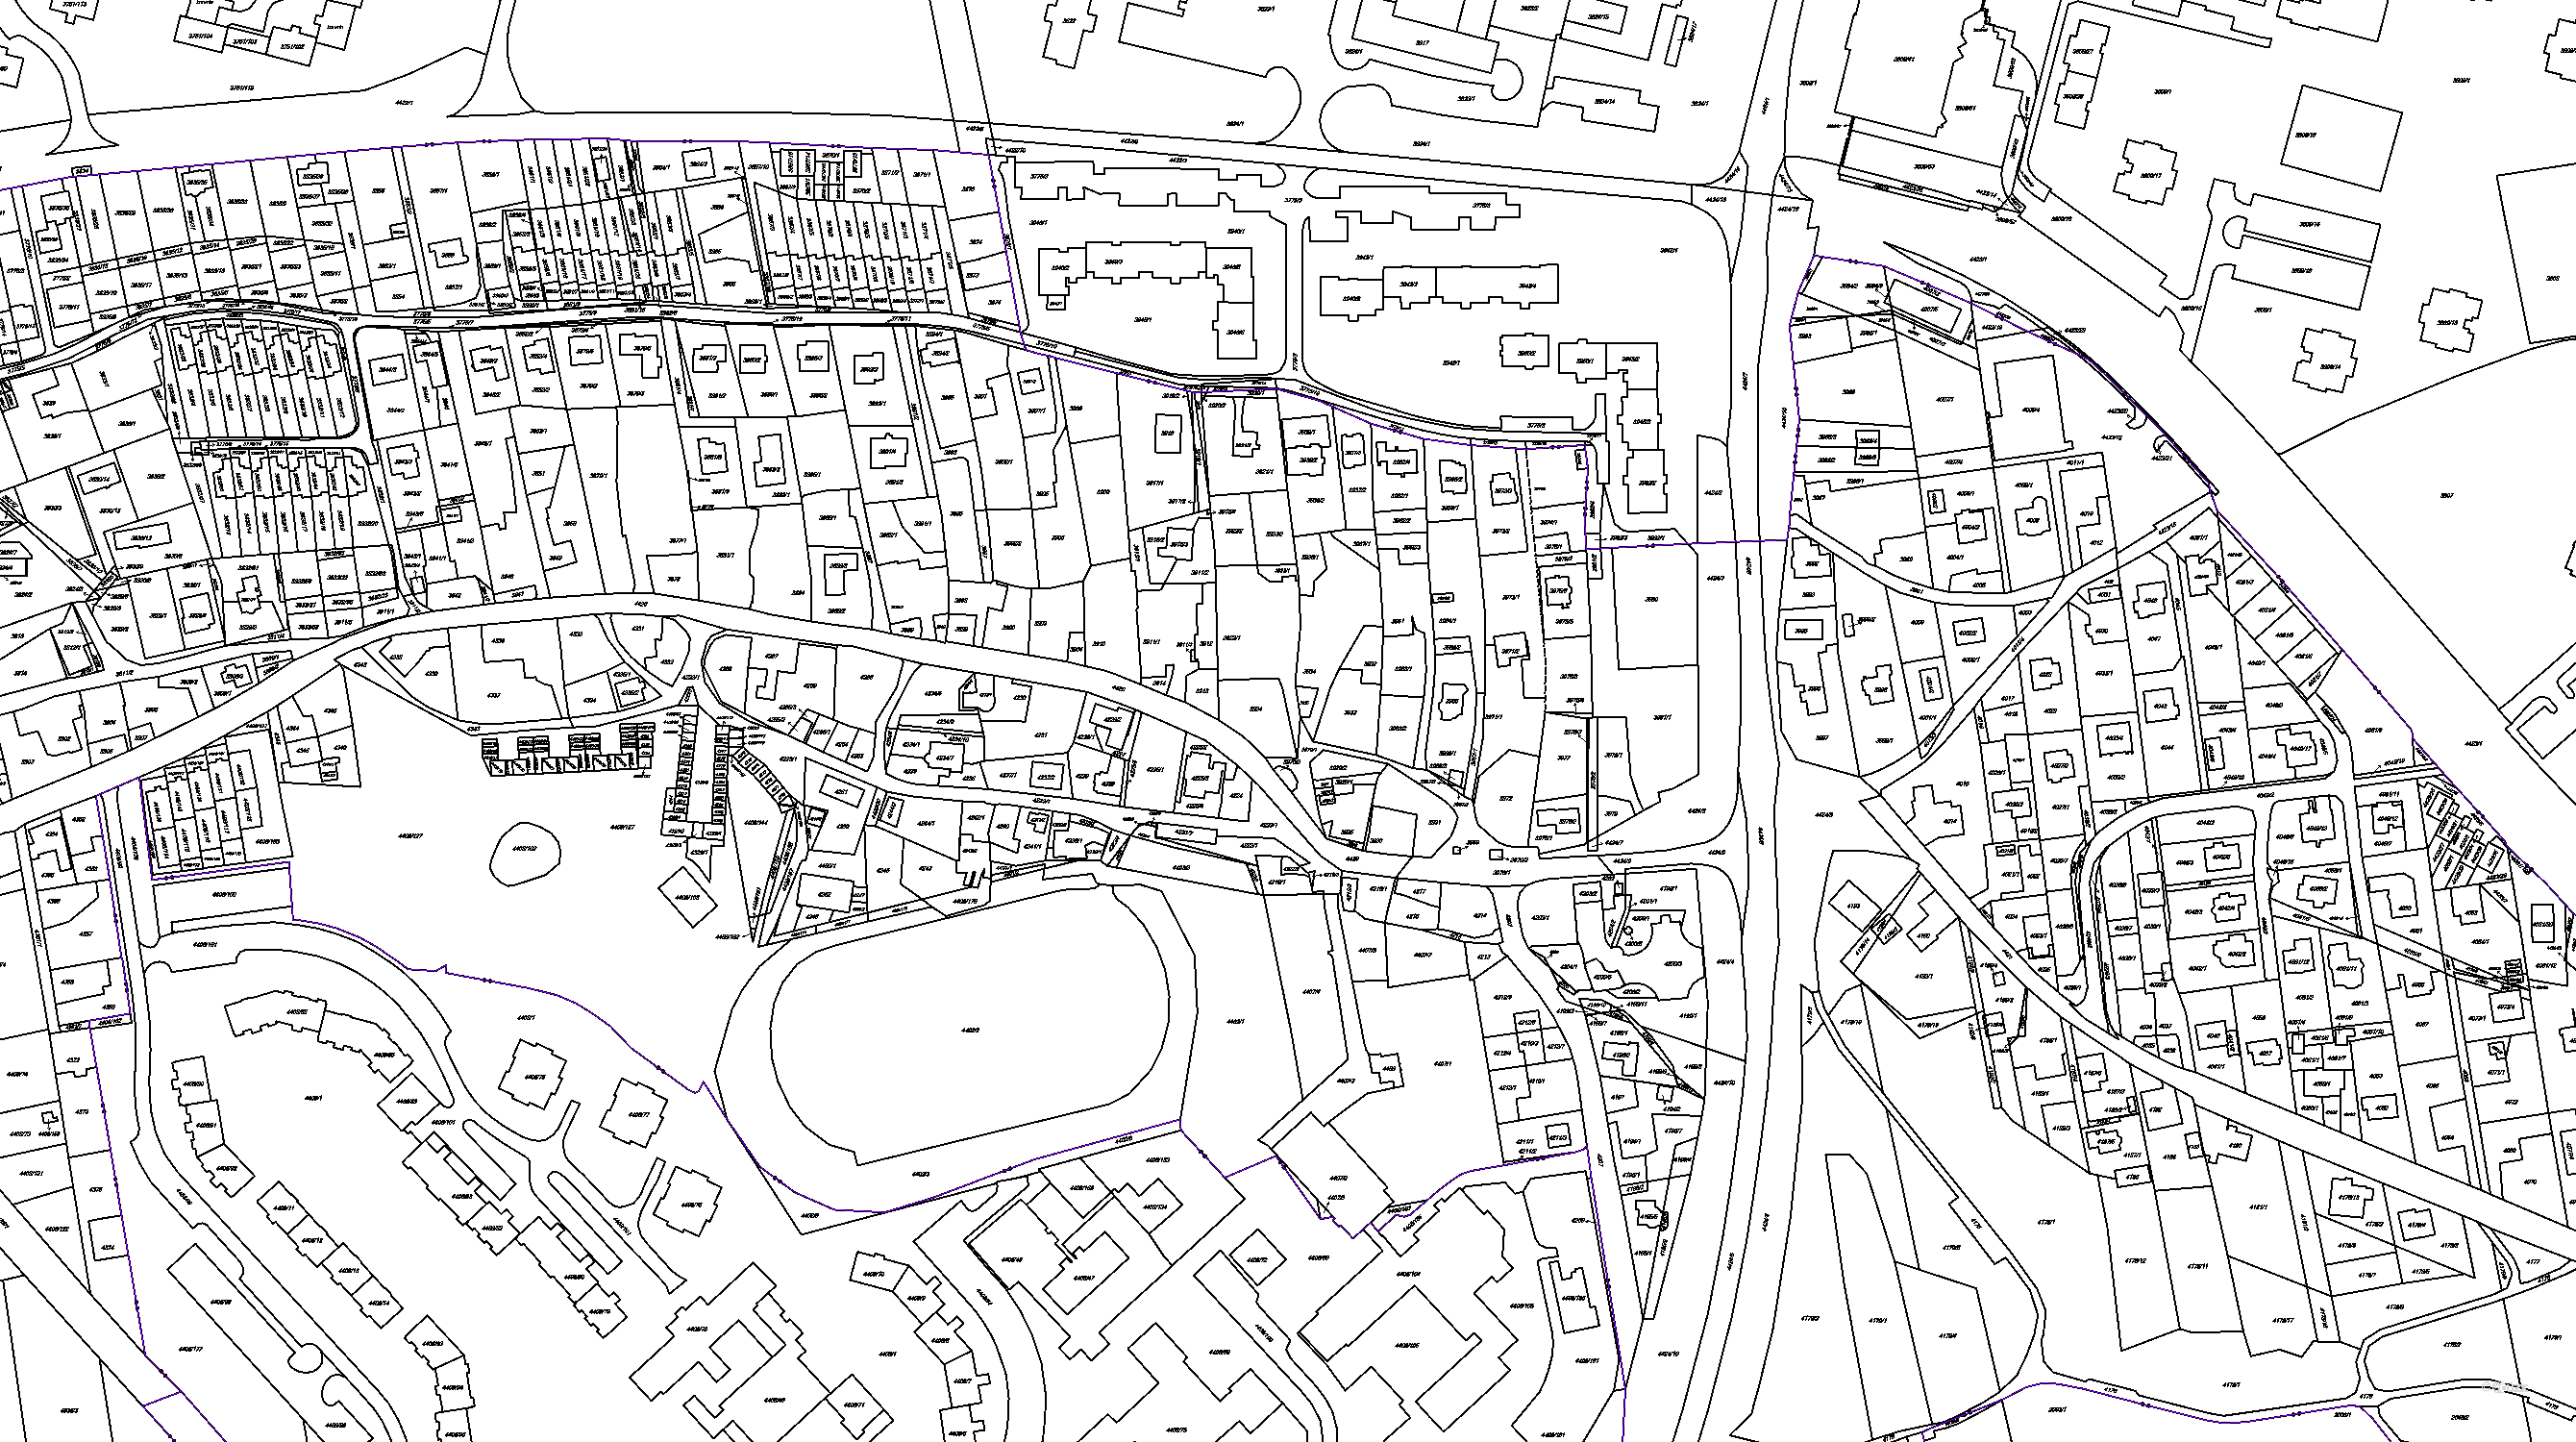 Katastrální mapa pozemků a čísla parcel Pustkovec